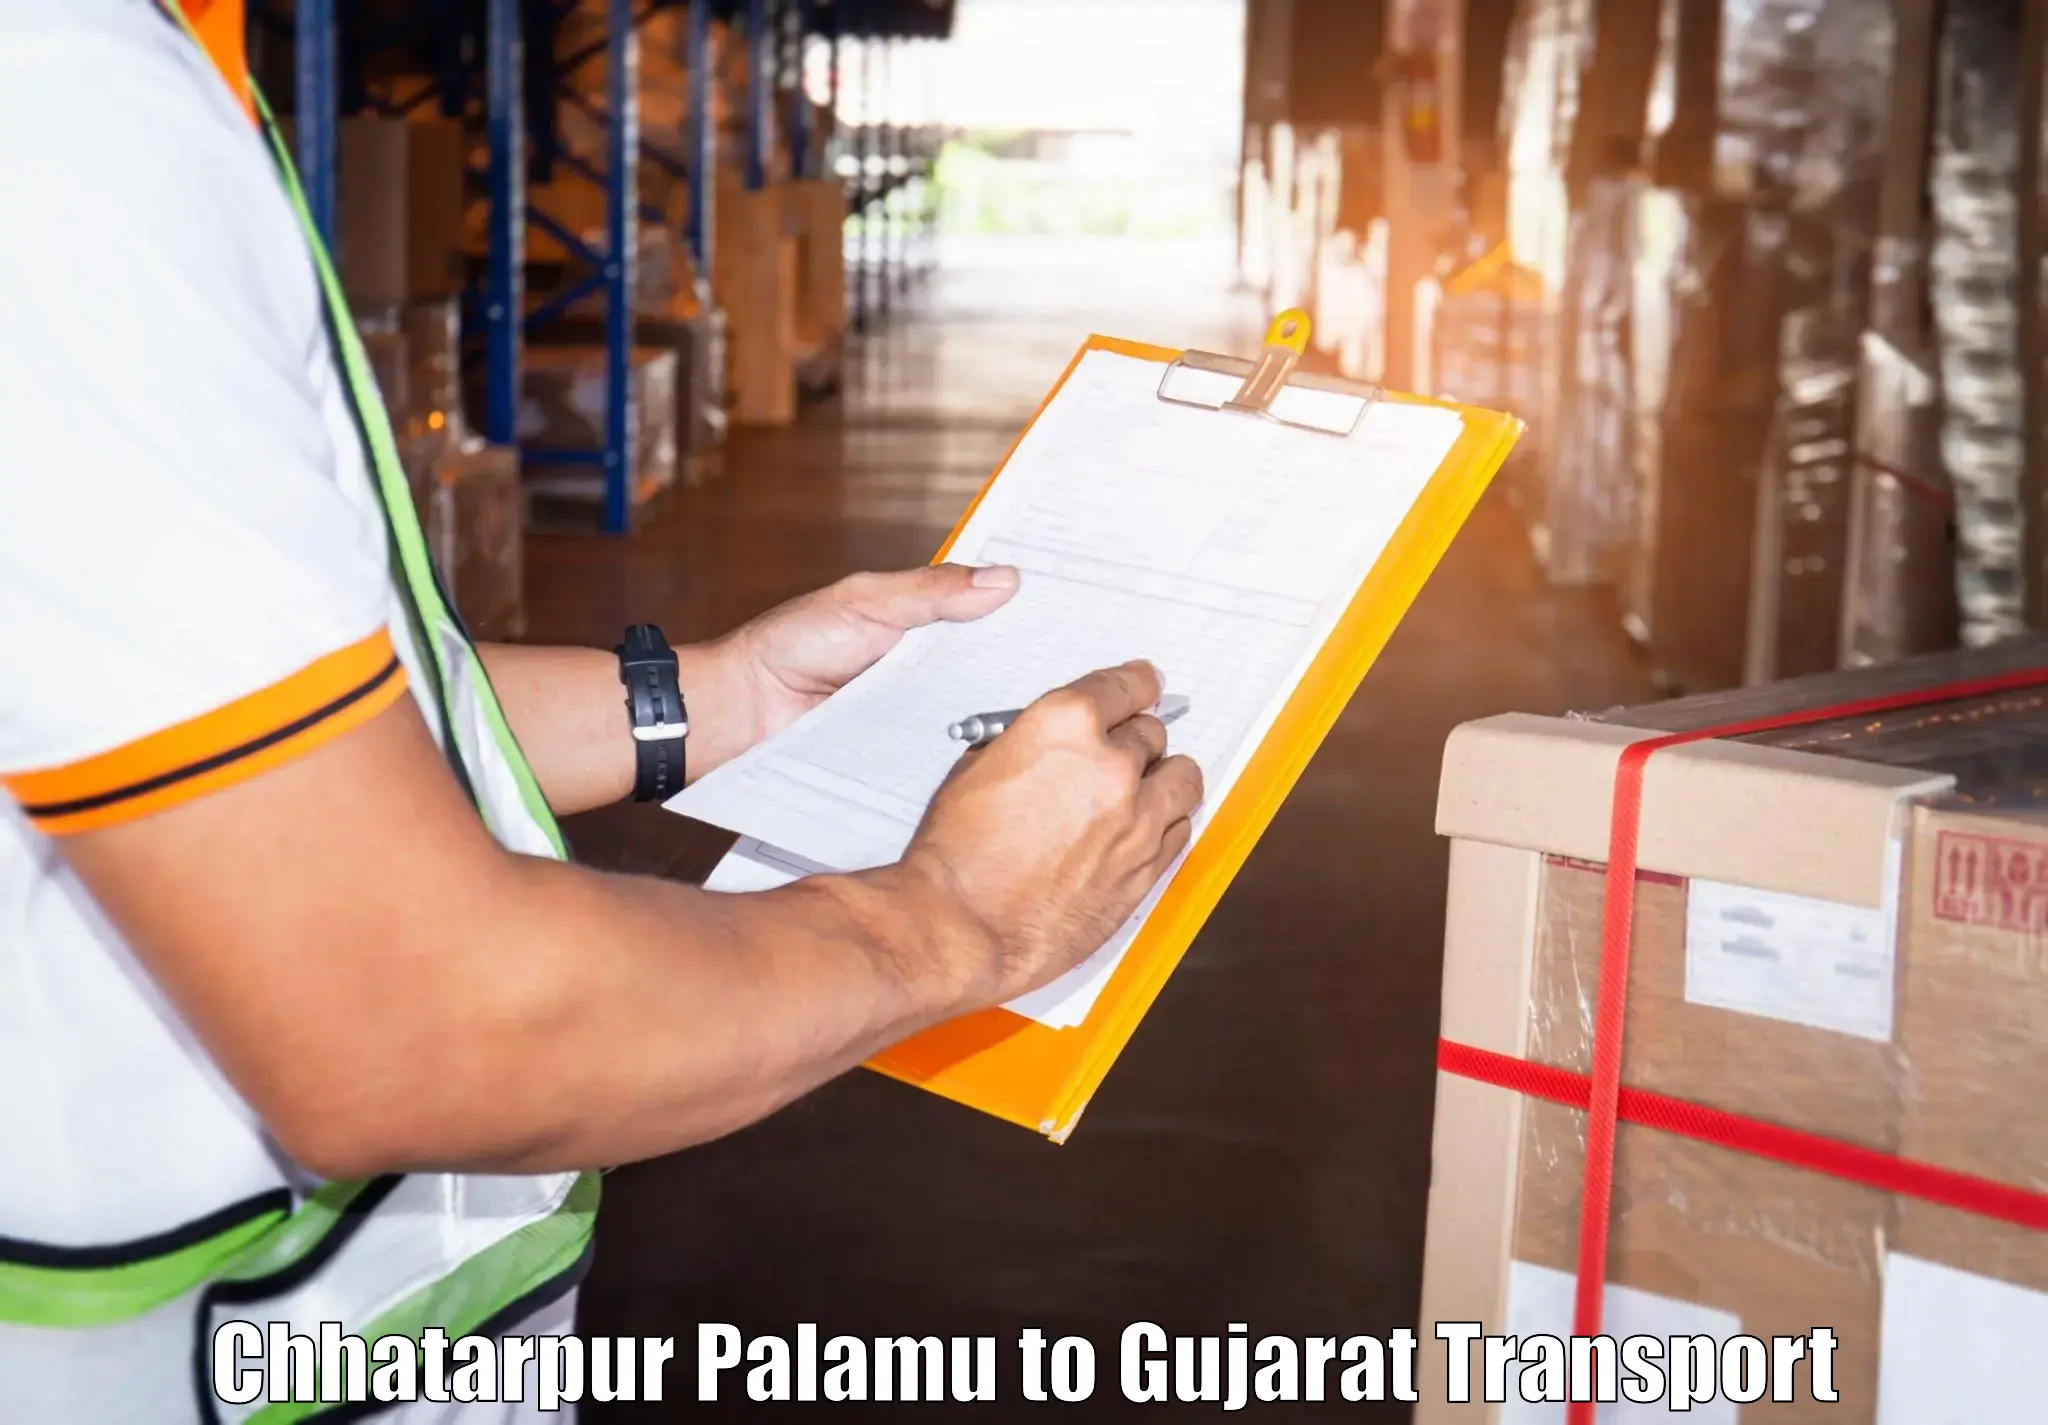 Logistics transportation services Chhatarpur Palamu to Dharampur Valsad